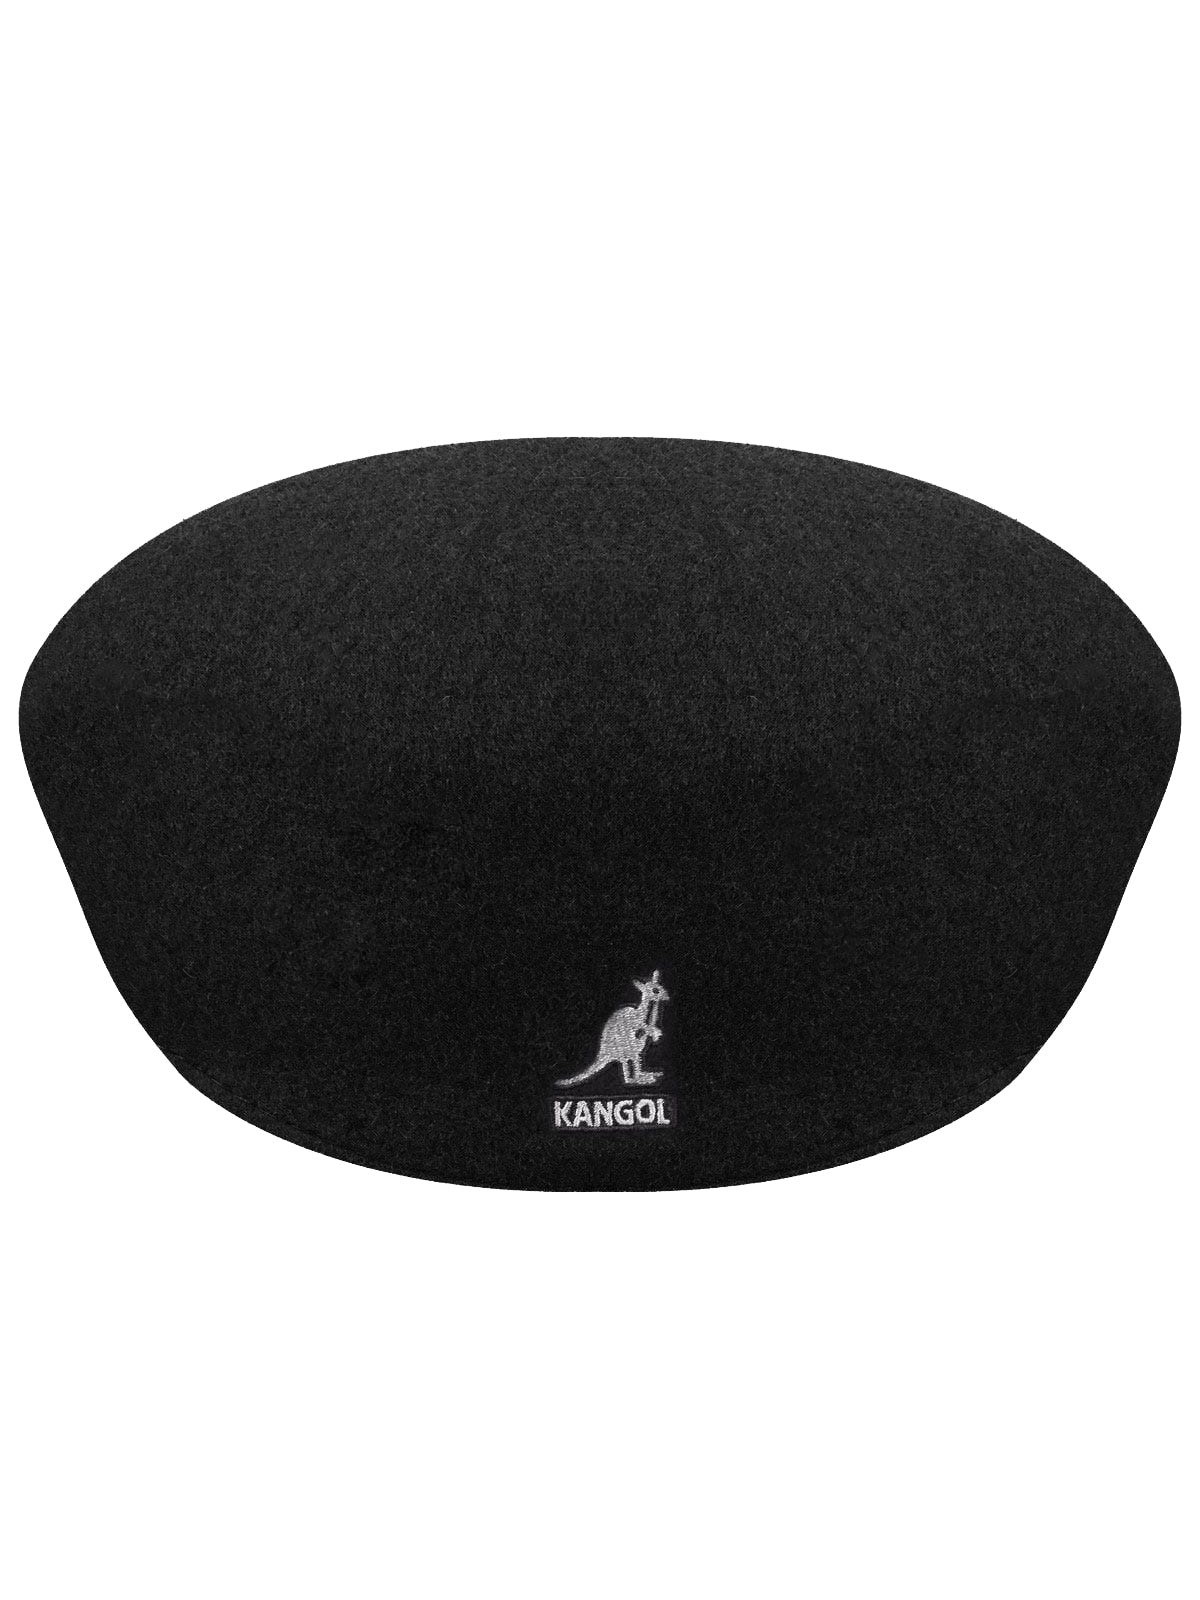 Kangol Wool 504 Cap in Black-2